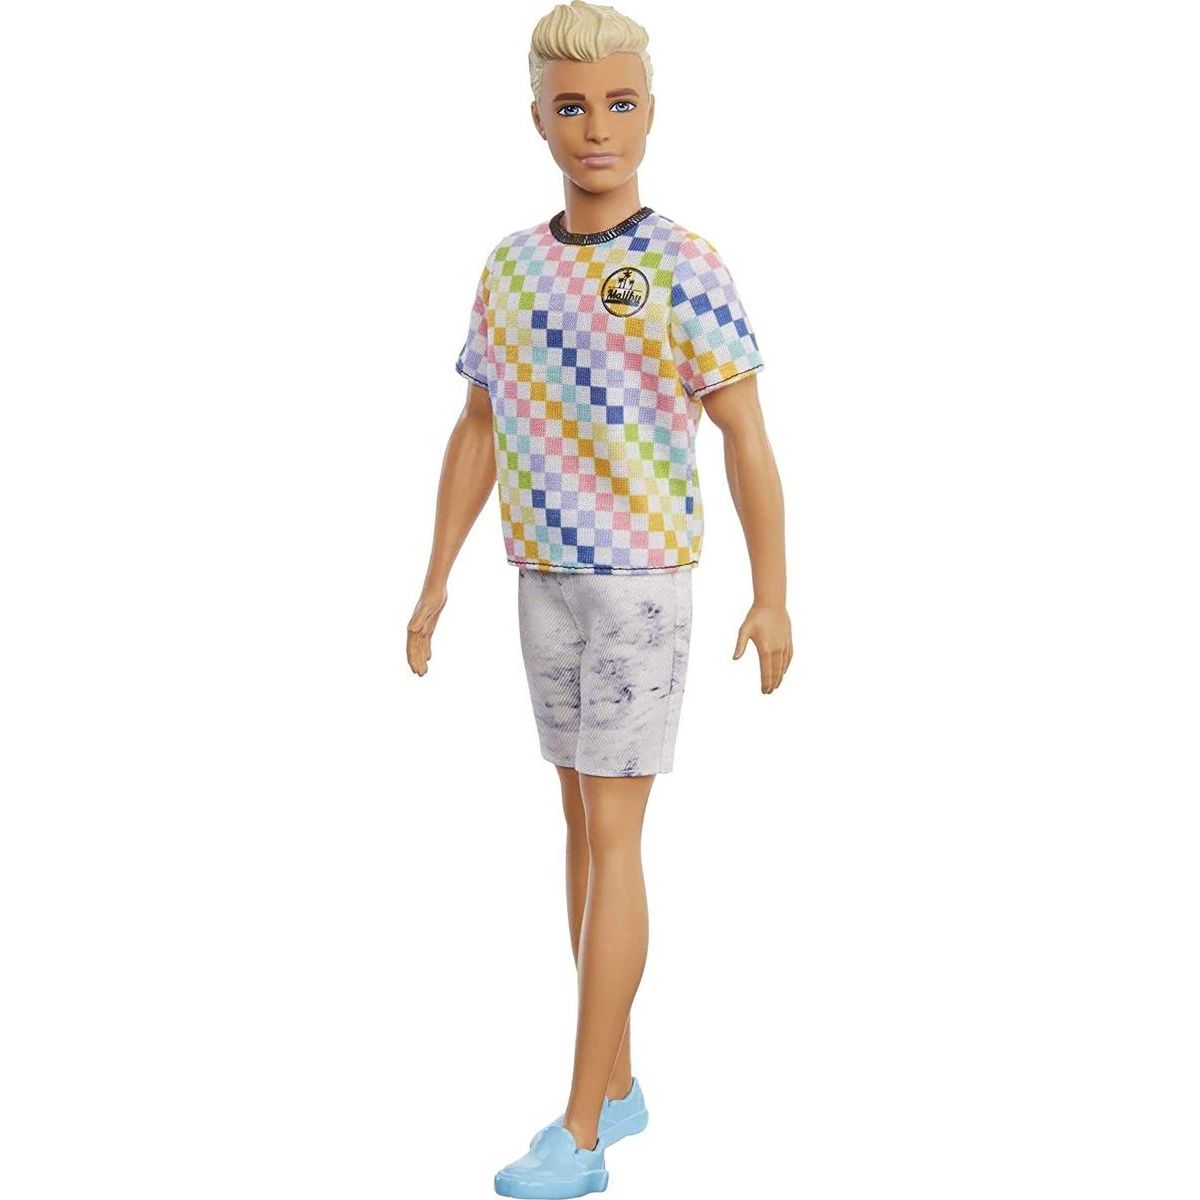 Mattel Barbie model Ken 174